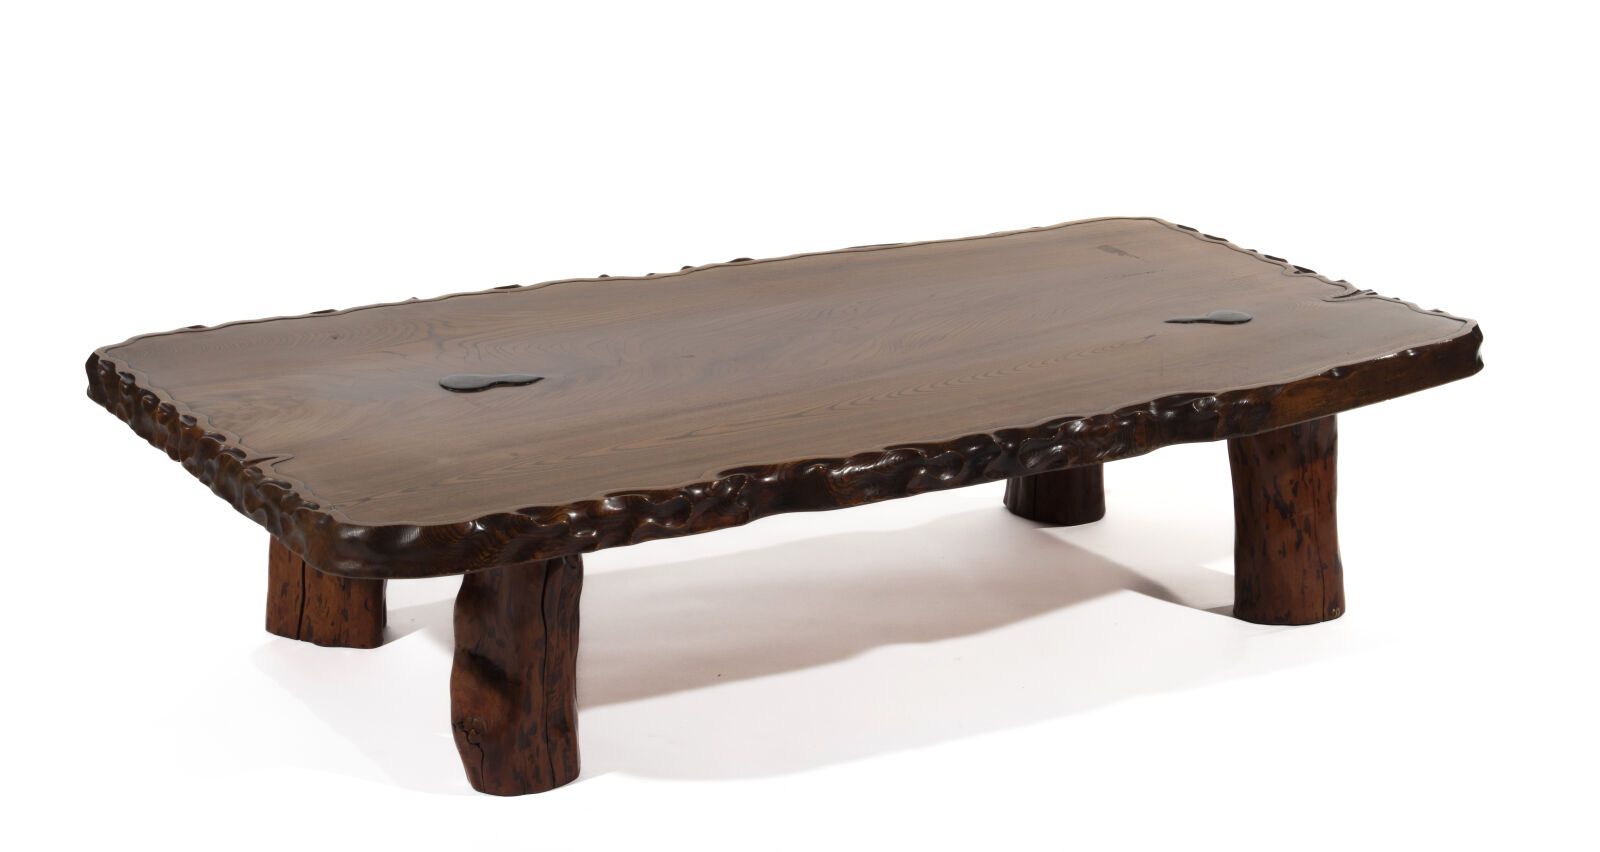 Null Tavolino pesante in legno massiccio zataku. 

Realizzato interamente in leg&hellip;